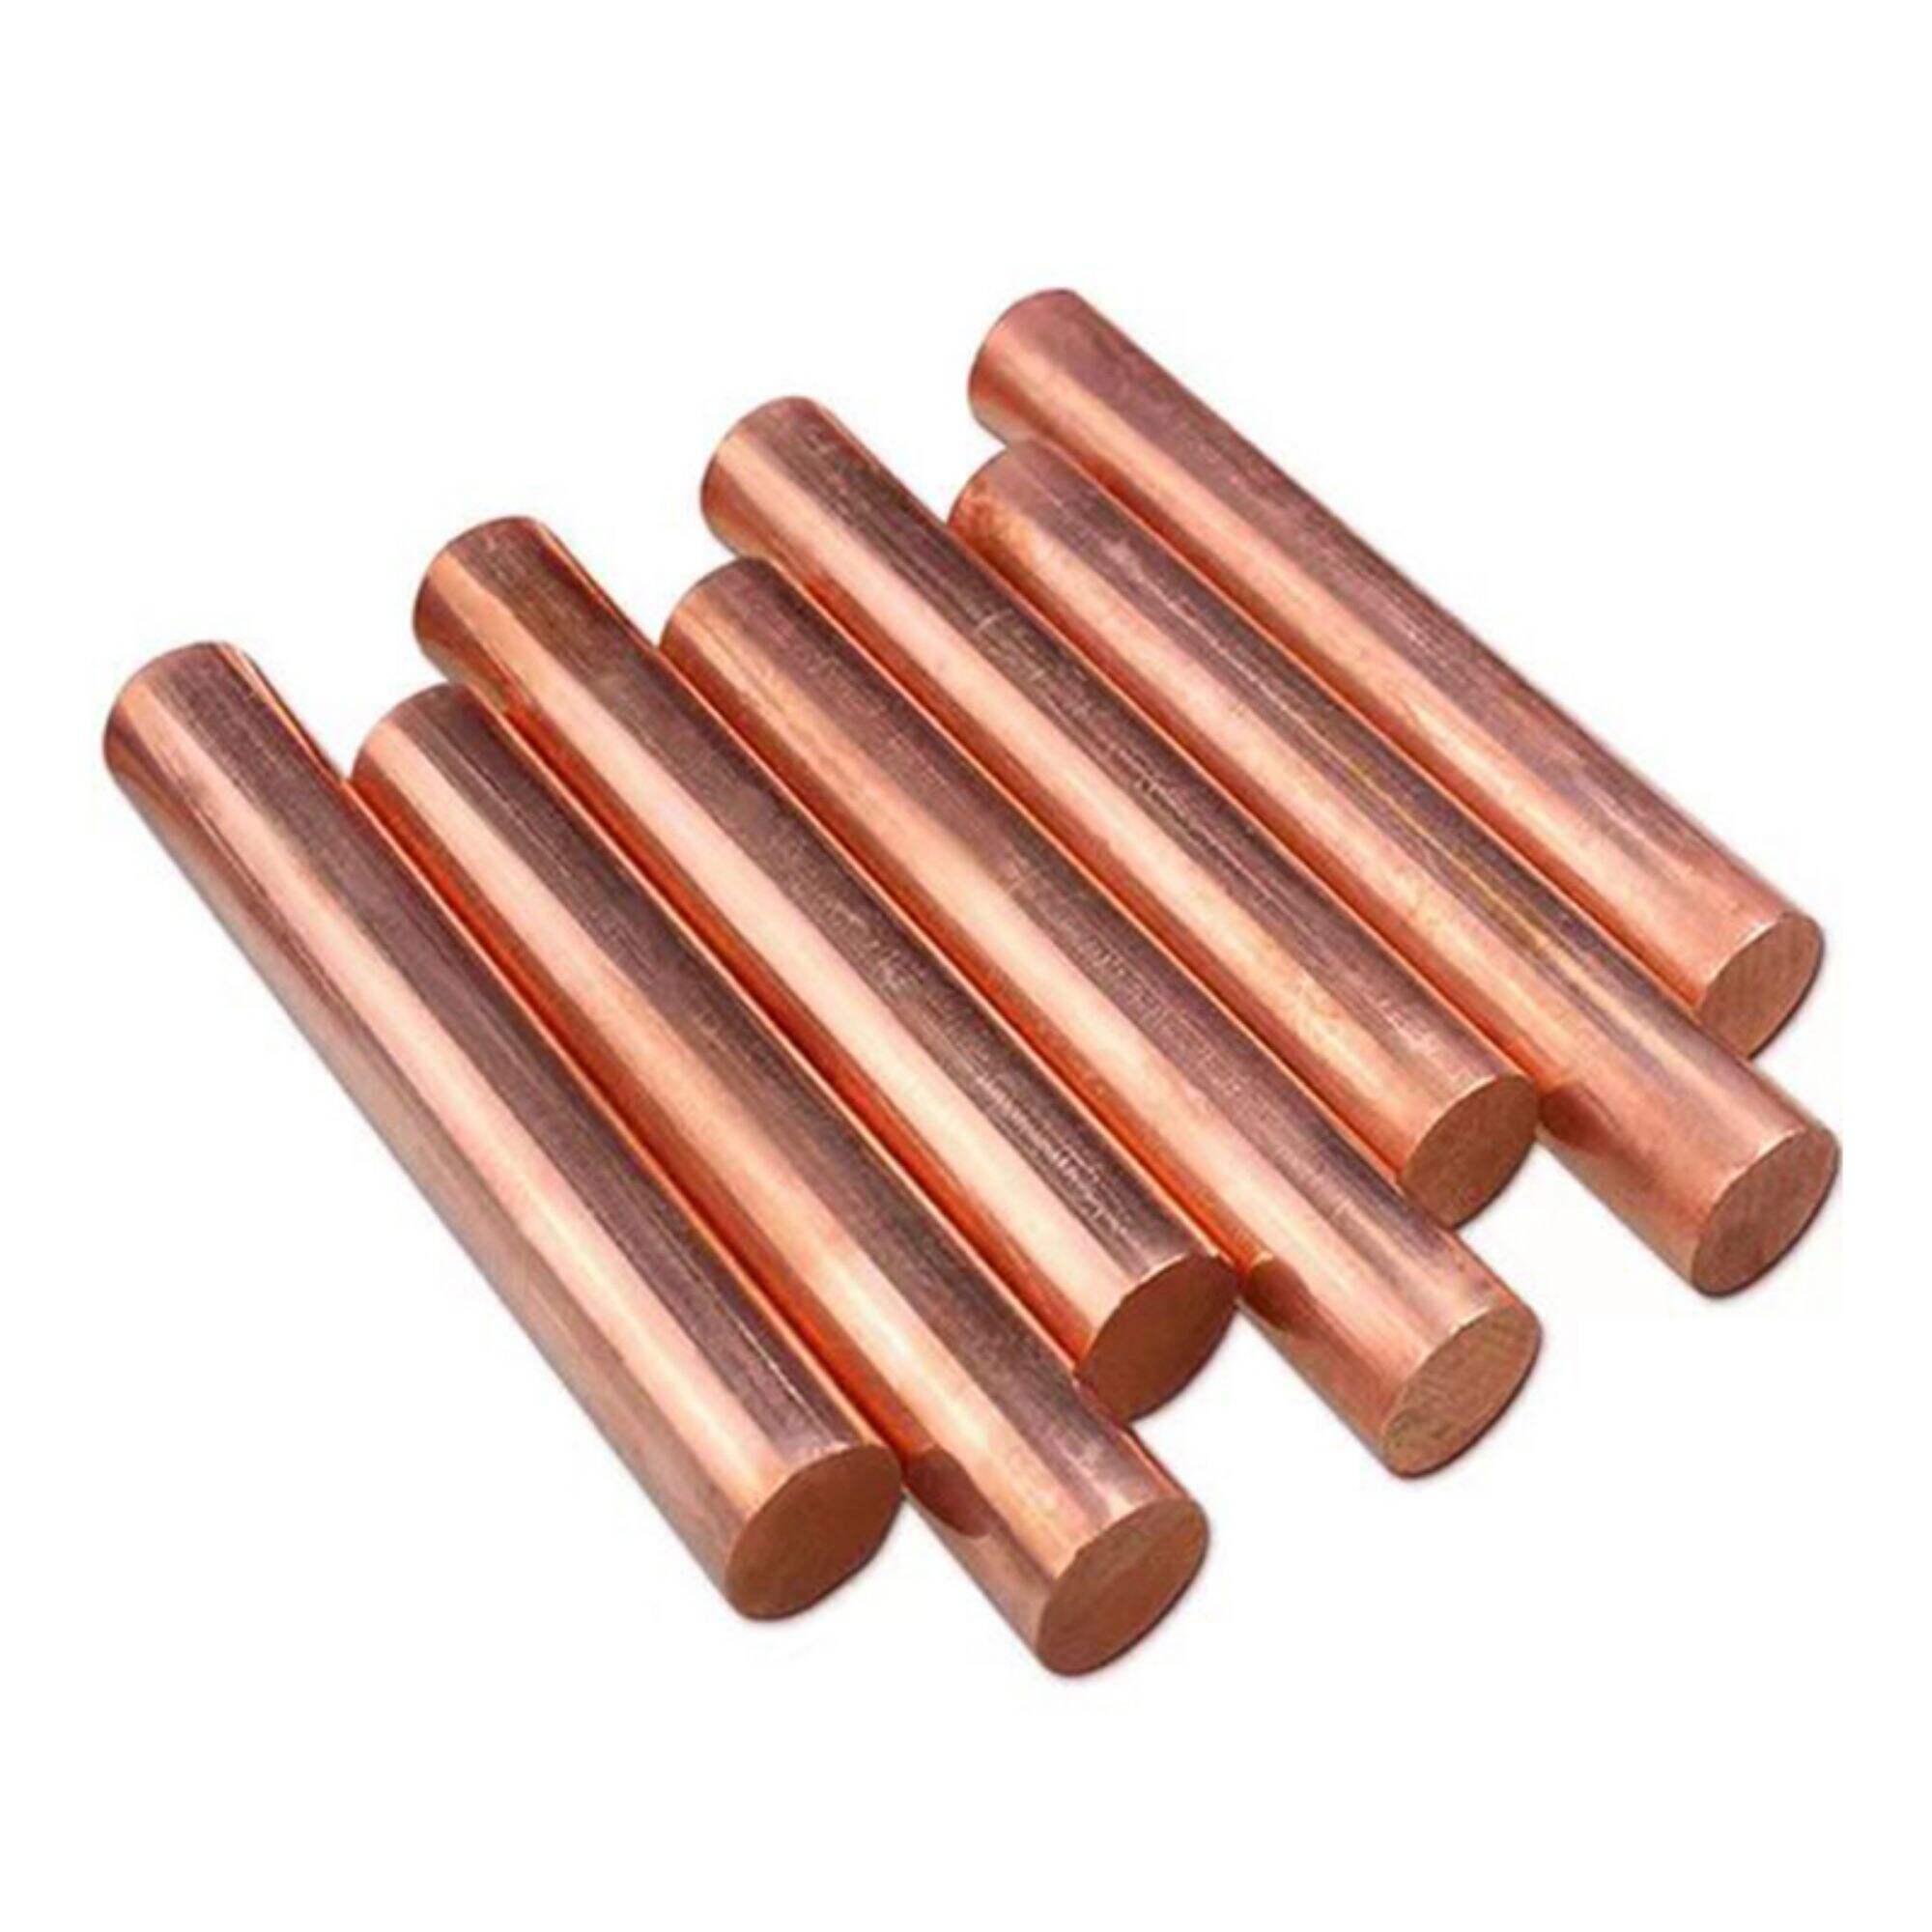 c18200 c18150 c18000 c79200 c79400 copper alloy rod bar